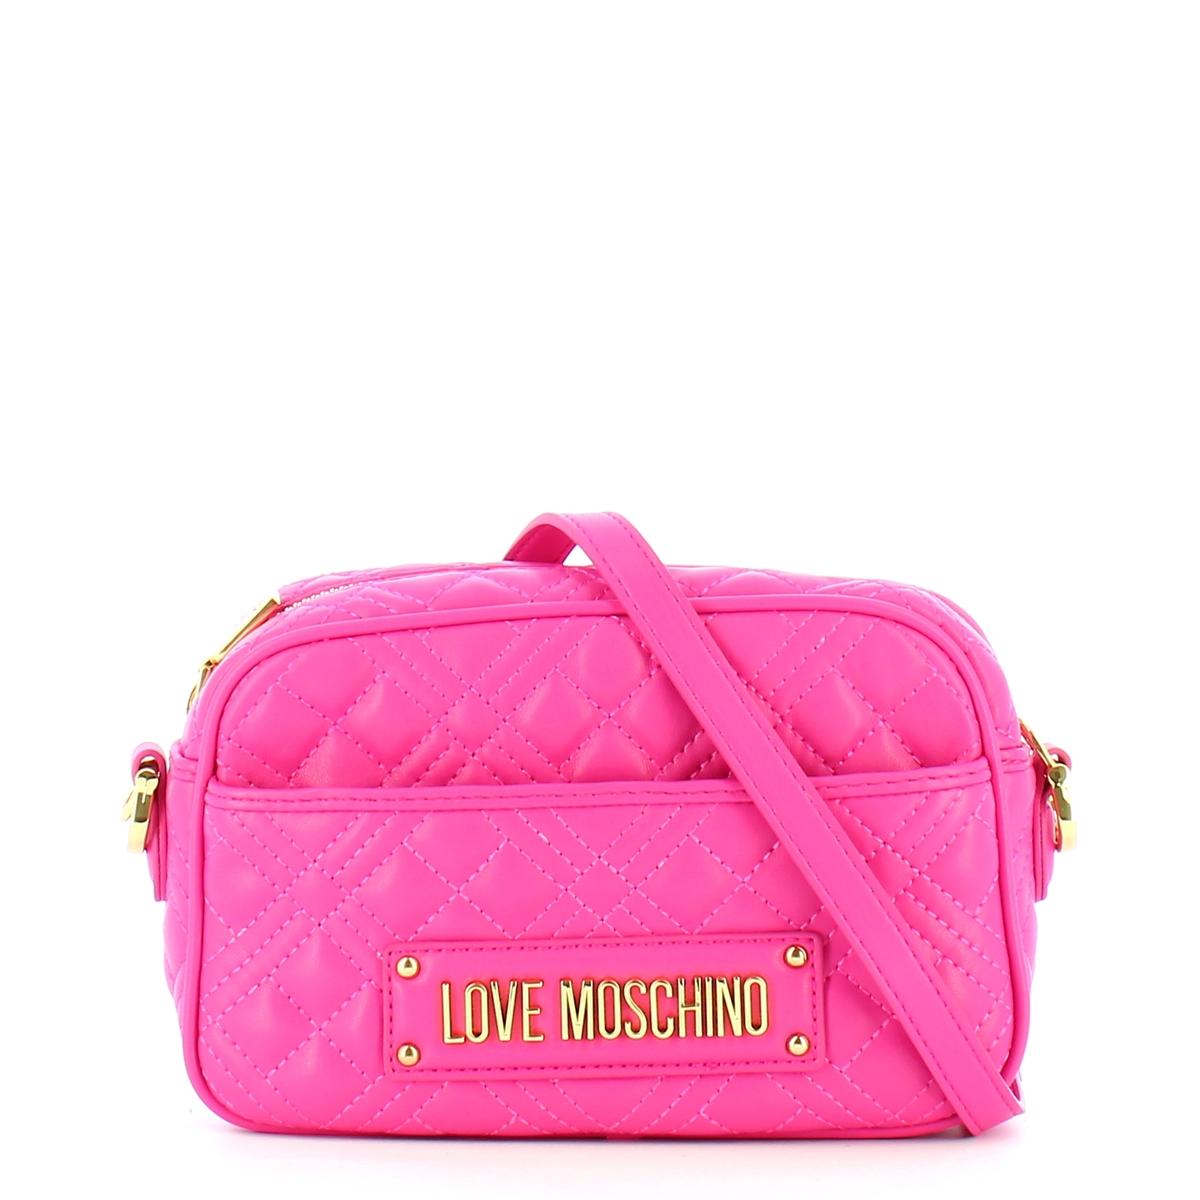 Love Moschino Women's Pink Bag